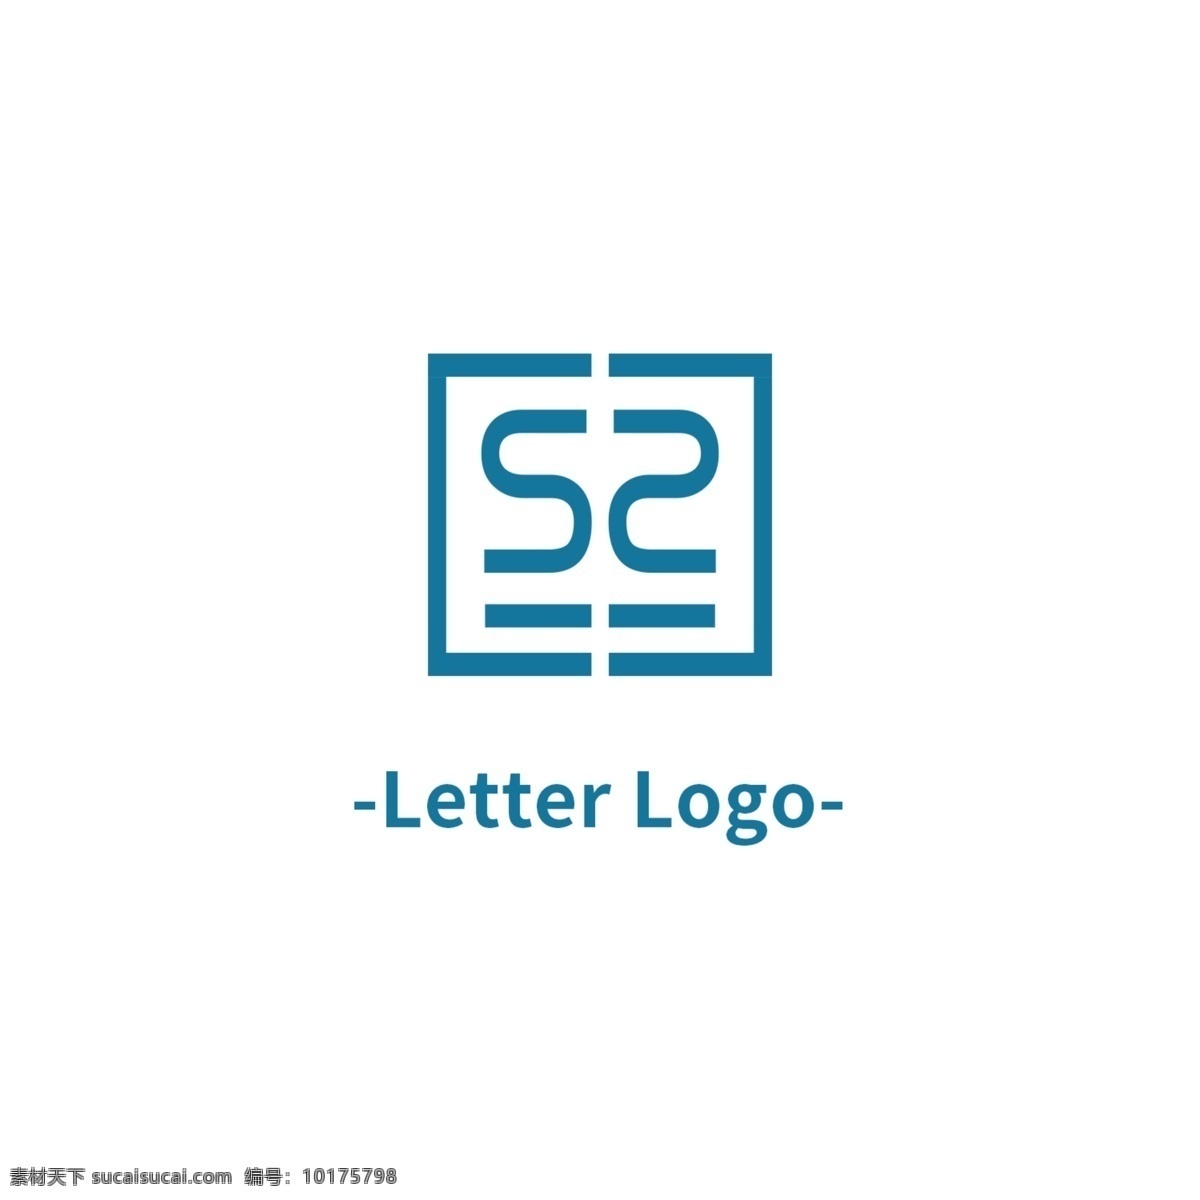 es 字母 logo 标志 行业标识 e s 蓝色 矩形 简约